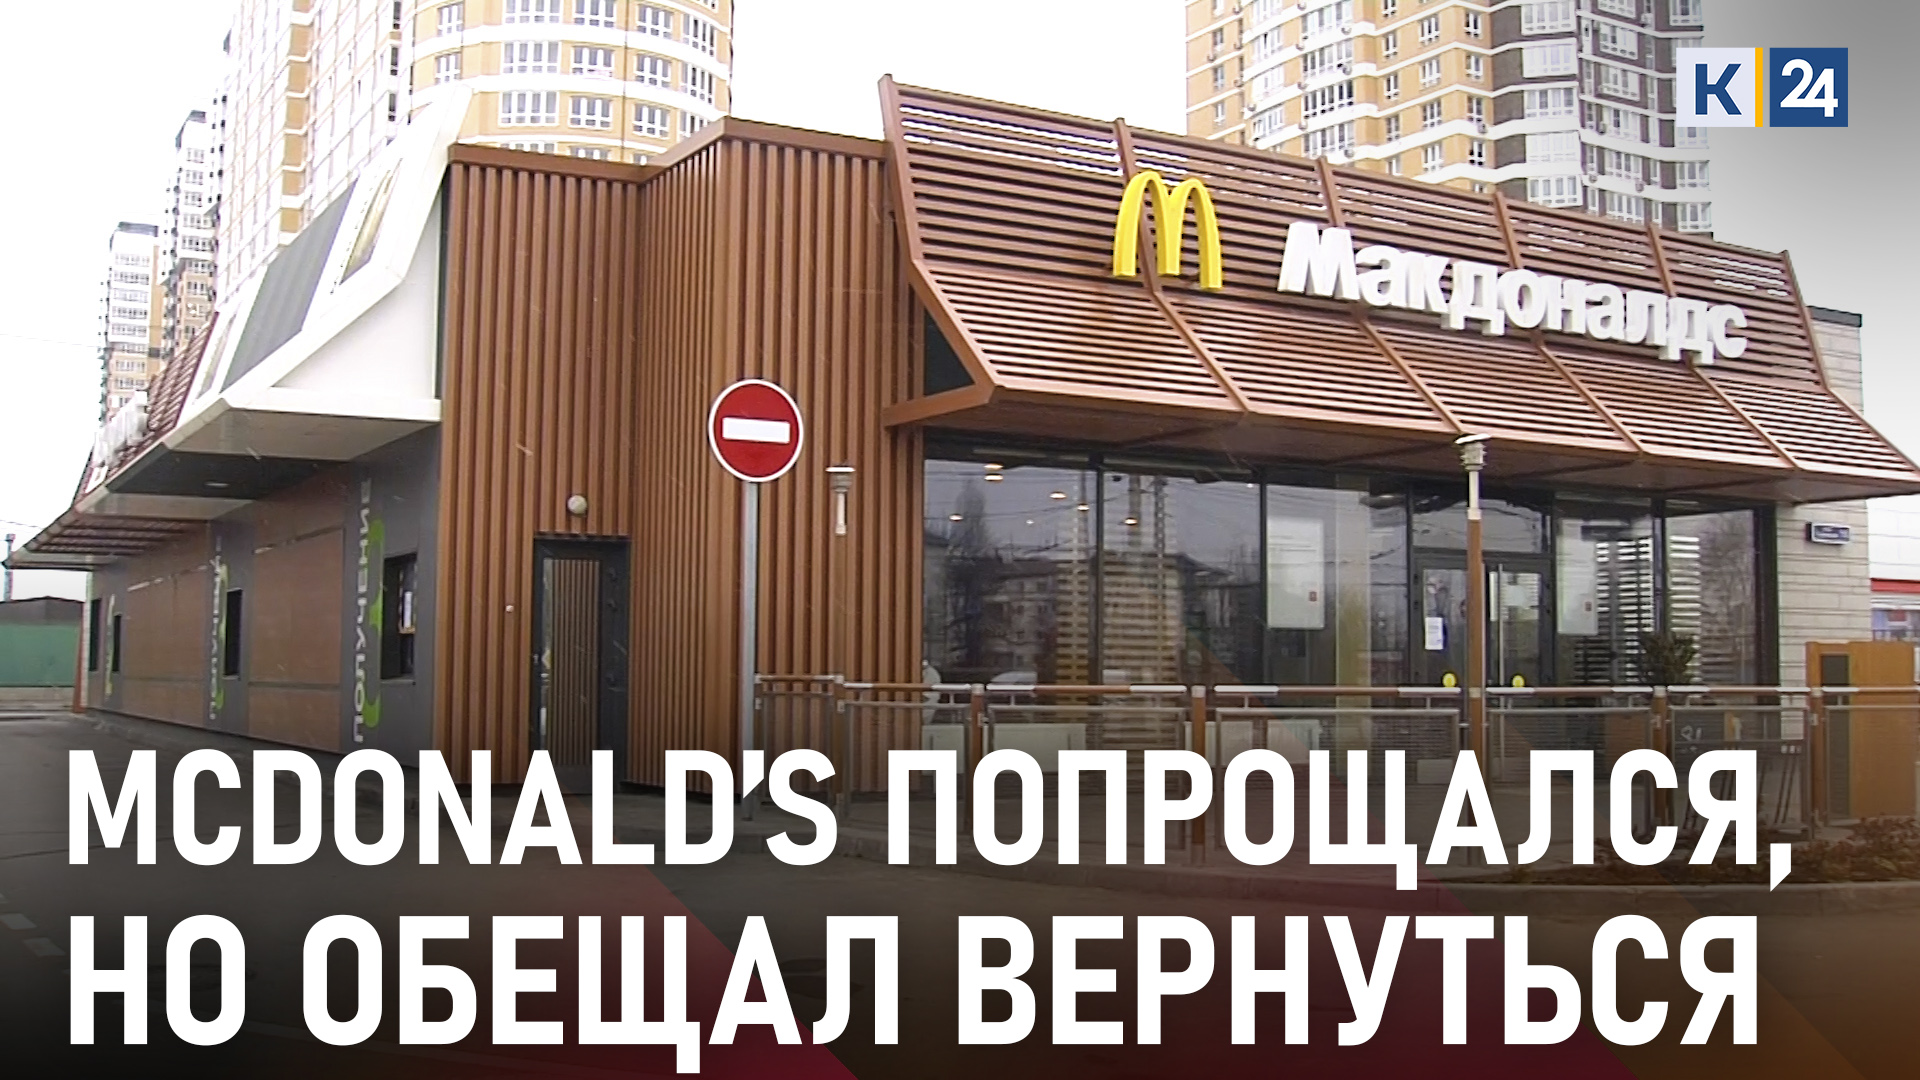 В России закрылся McDonald’s, но обещал сохранить сотрудников и заработную плату